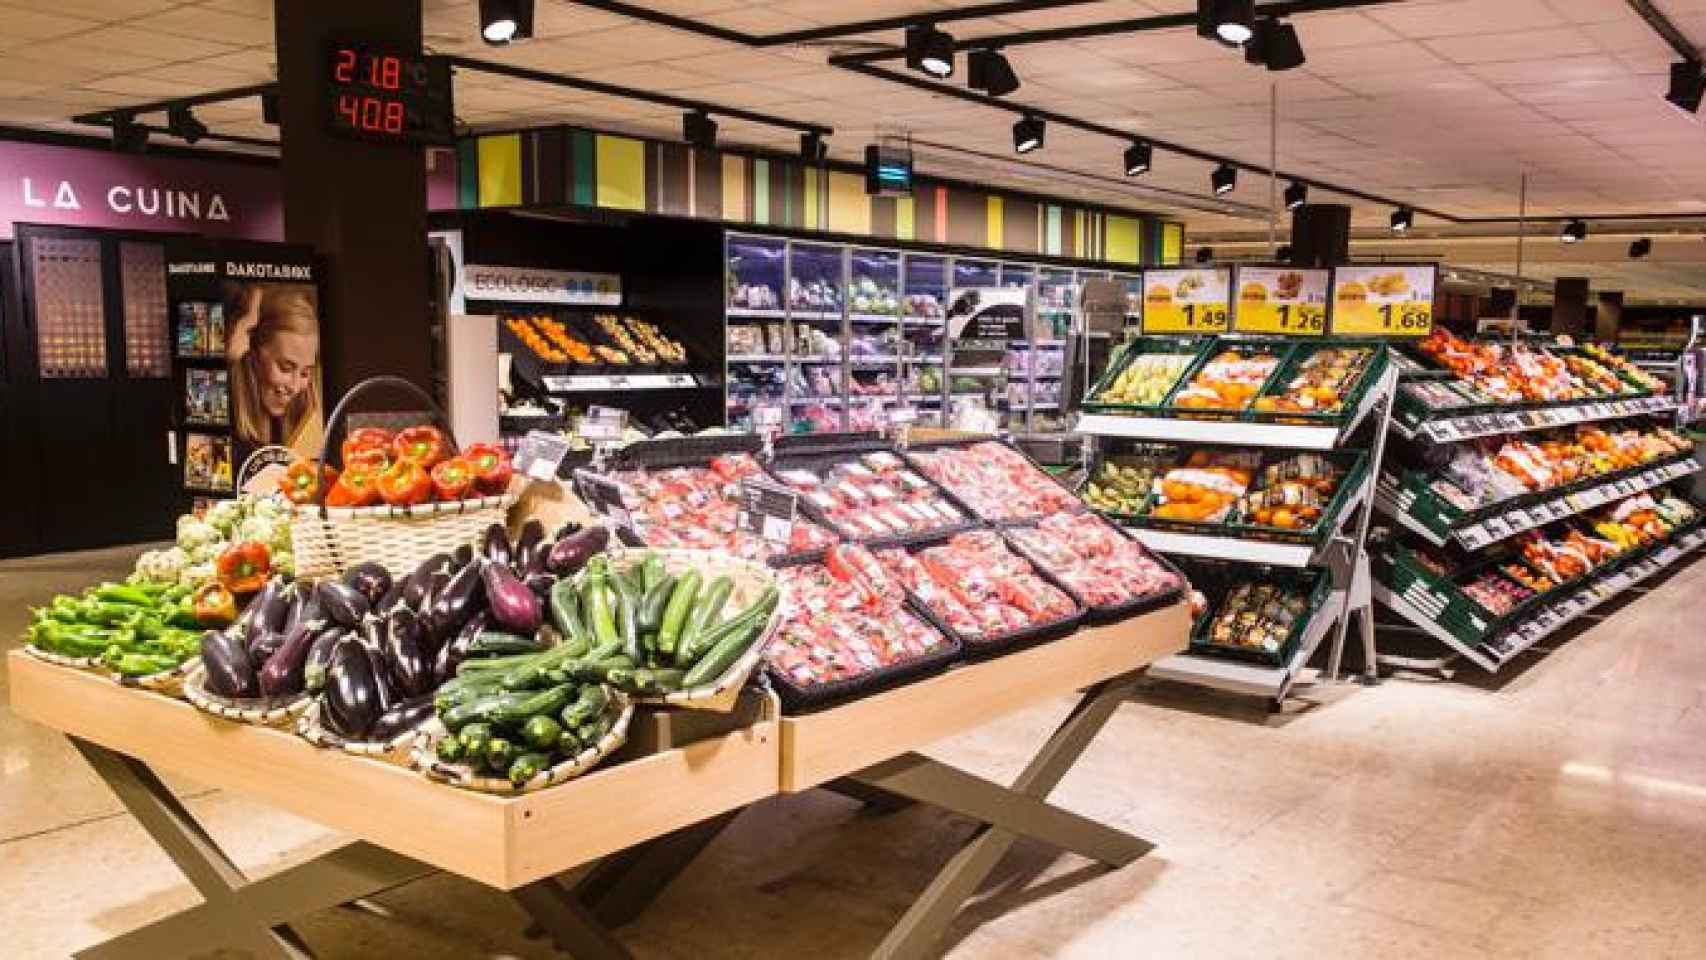 Imagen de la zona de productos frescos de los supermercados Caprabo, cuya distribución se hará en una nueva plataforma logística situada en ZAP el Port / CG